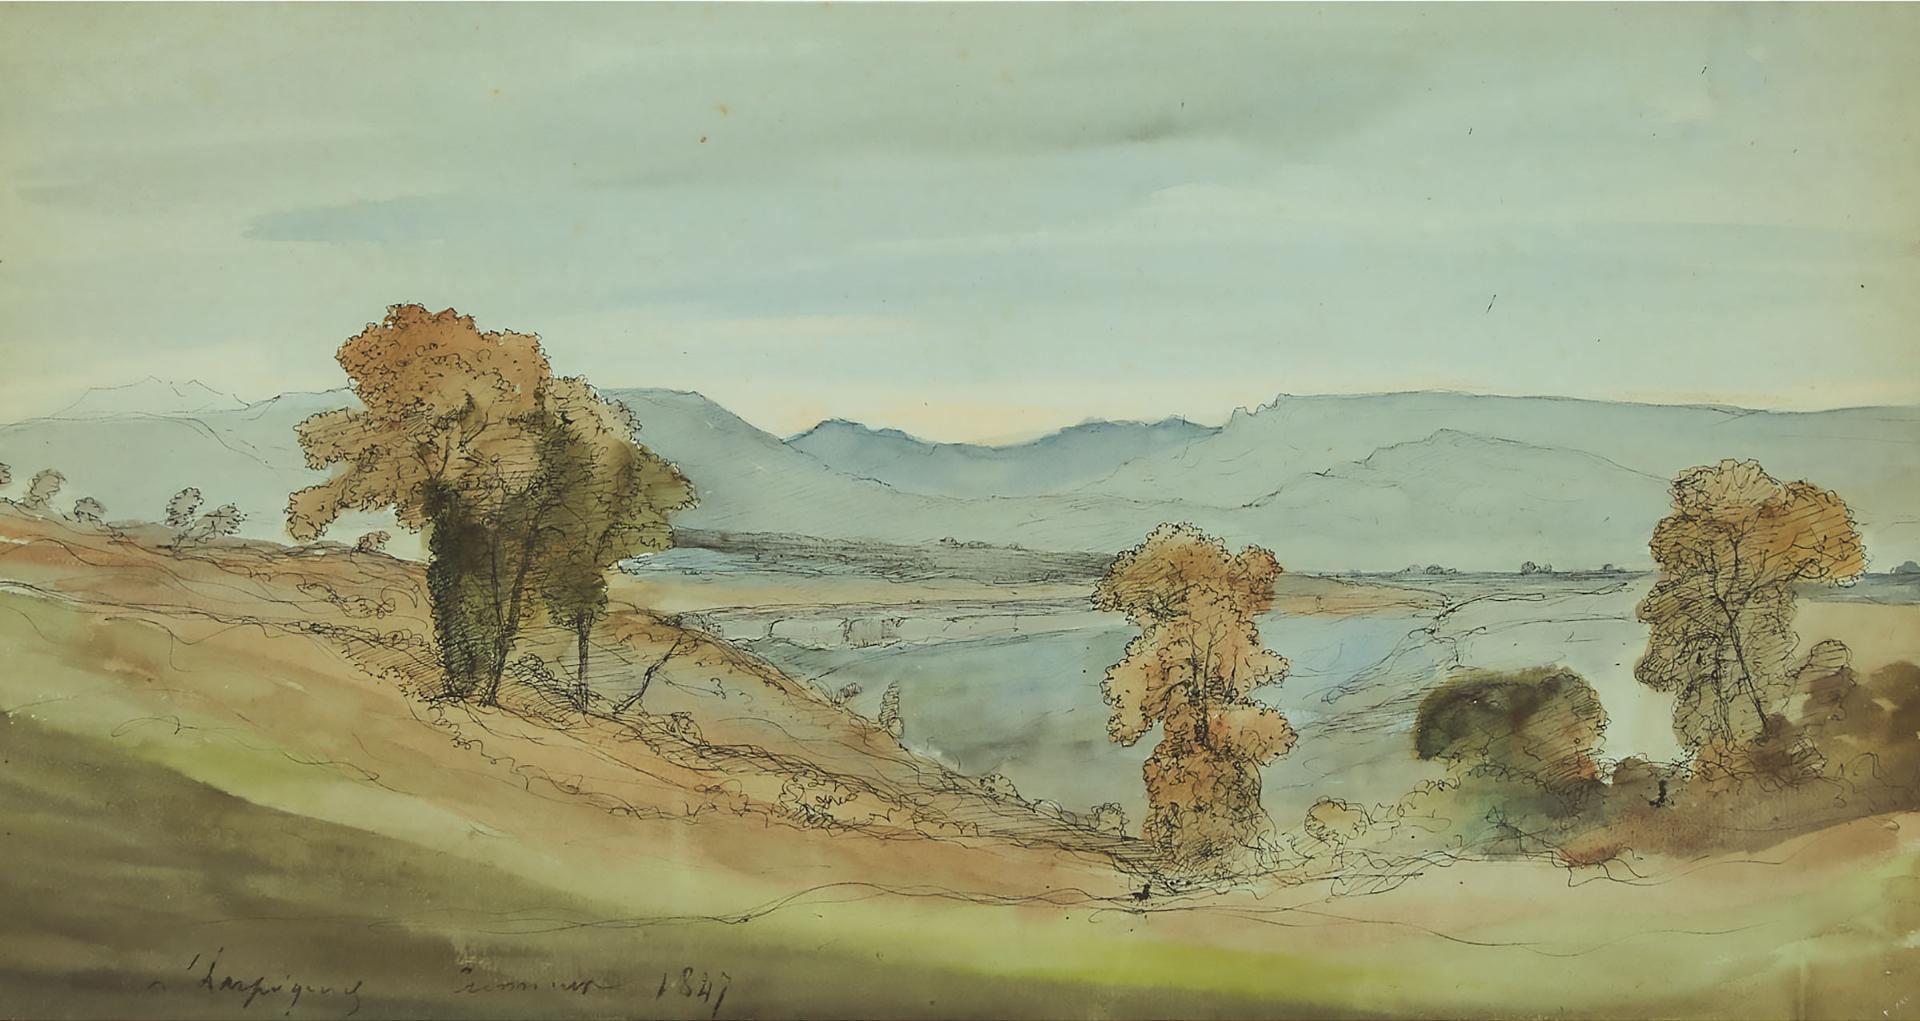 Henri Joseph Harpignies (1819-1916) - Shoreline at Crémieux, 1847